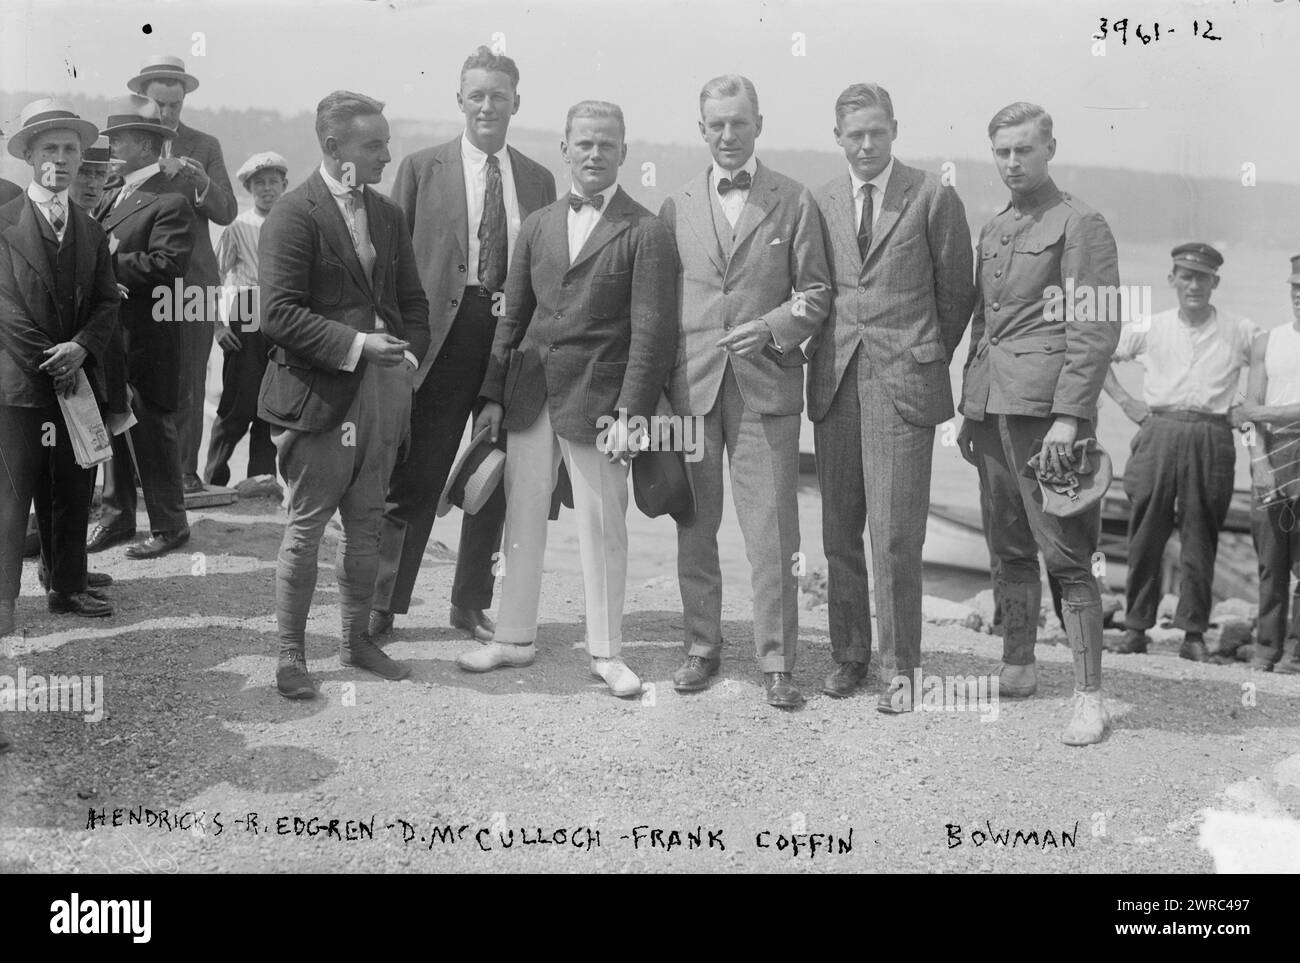 Hendricks, d. h. Kendrick, B. Edgren, D. McCulloch, Frank Coffin (d. h. Coffyn), Bowman, das Foto zeigt die Piloten Beryl H. Kendrick, Robert W. 'Bob' Edgren, David McCulloch (McCullough), Frank Trenholm Coffyn und Ripley Bowman. Der zweite Mann von rechts könnte Lawrence Burst Sperry sein. Piloten nahmen am 31. August 1916 an einem Mittagessen in der New York Flying Yacht Club Station am Hudson River Teil., 1916. August 31, Glass negative, 1 negative: Glass Stockfoto